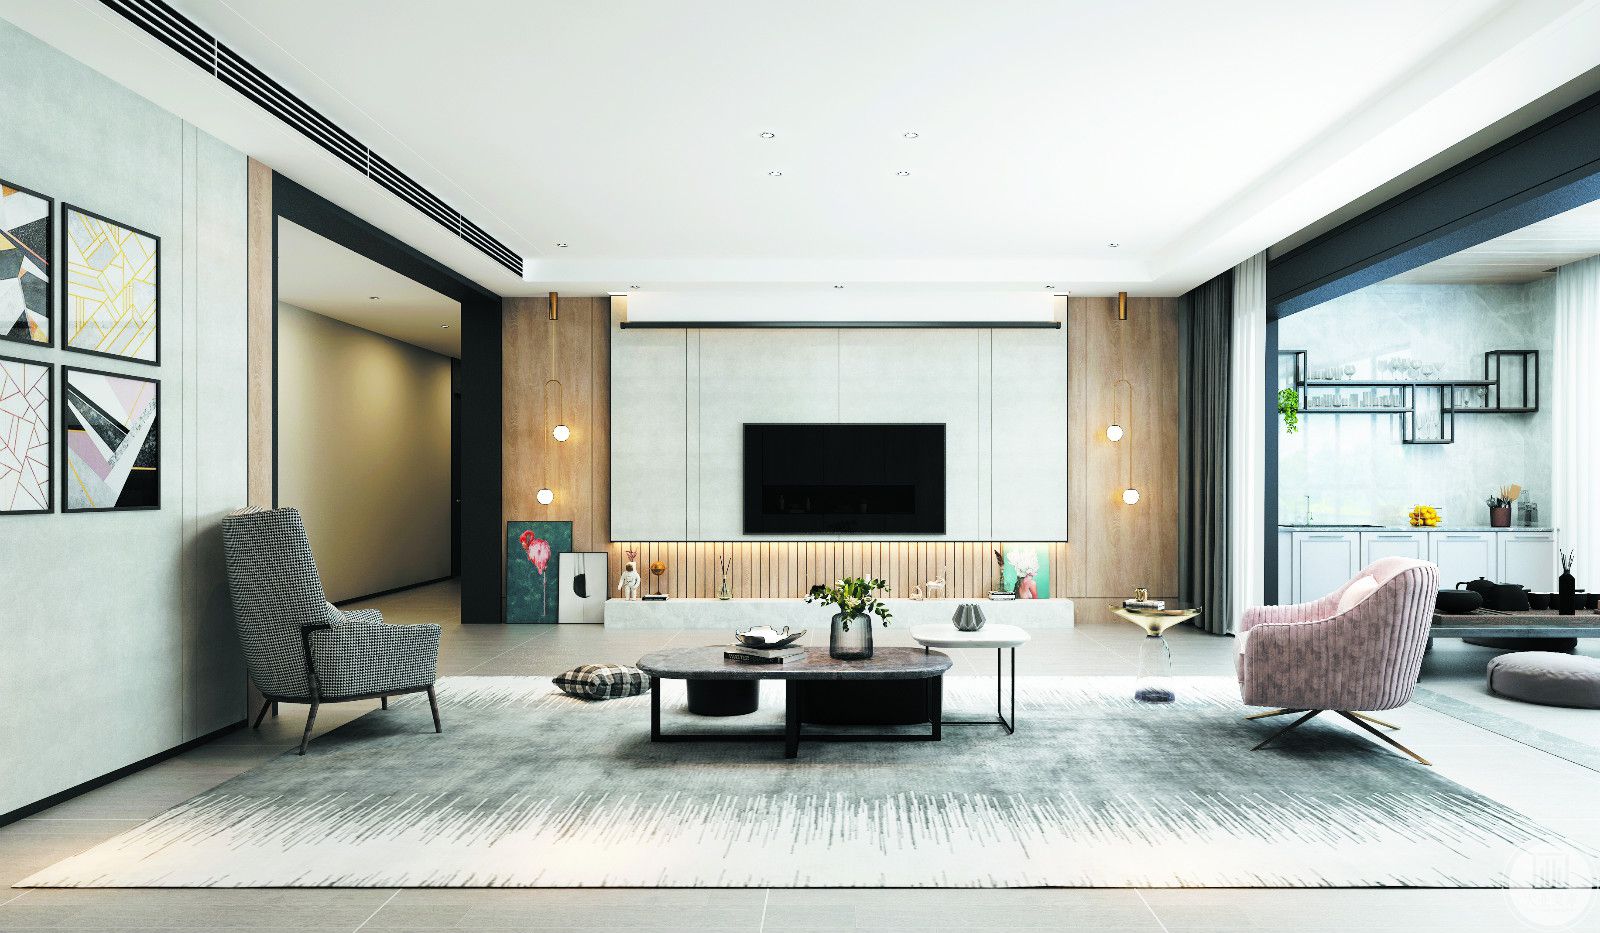 客厅整体效果图-轻快简洁的线条和时尚的设计形式，简约之处突显格调，恰到好处的空间能衬托业主的生活品位与气质.